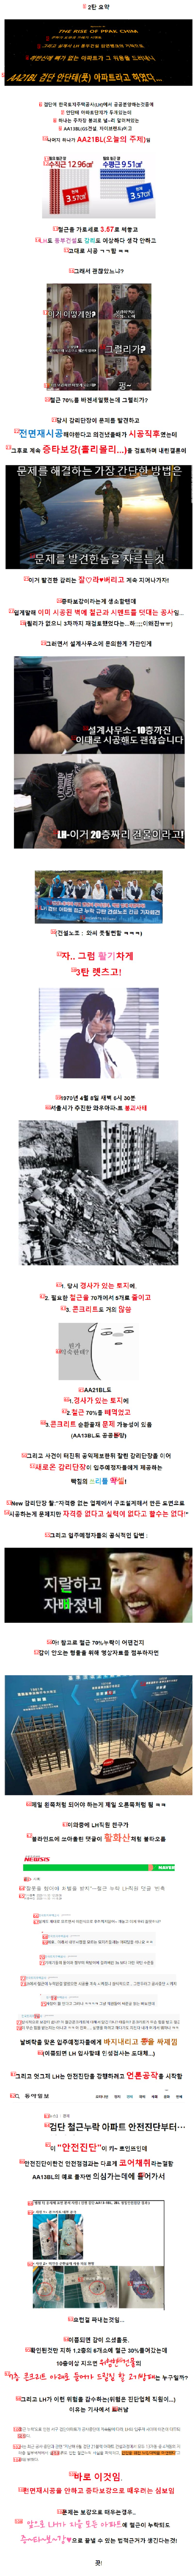 검단 아파트 붕괴 사태 3탄!